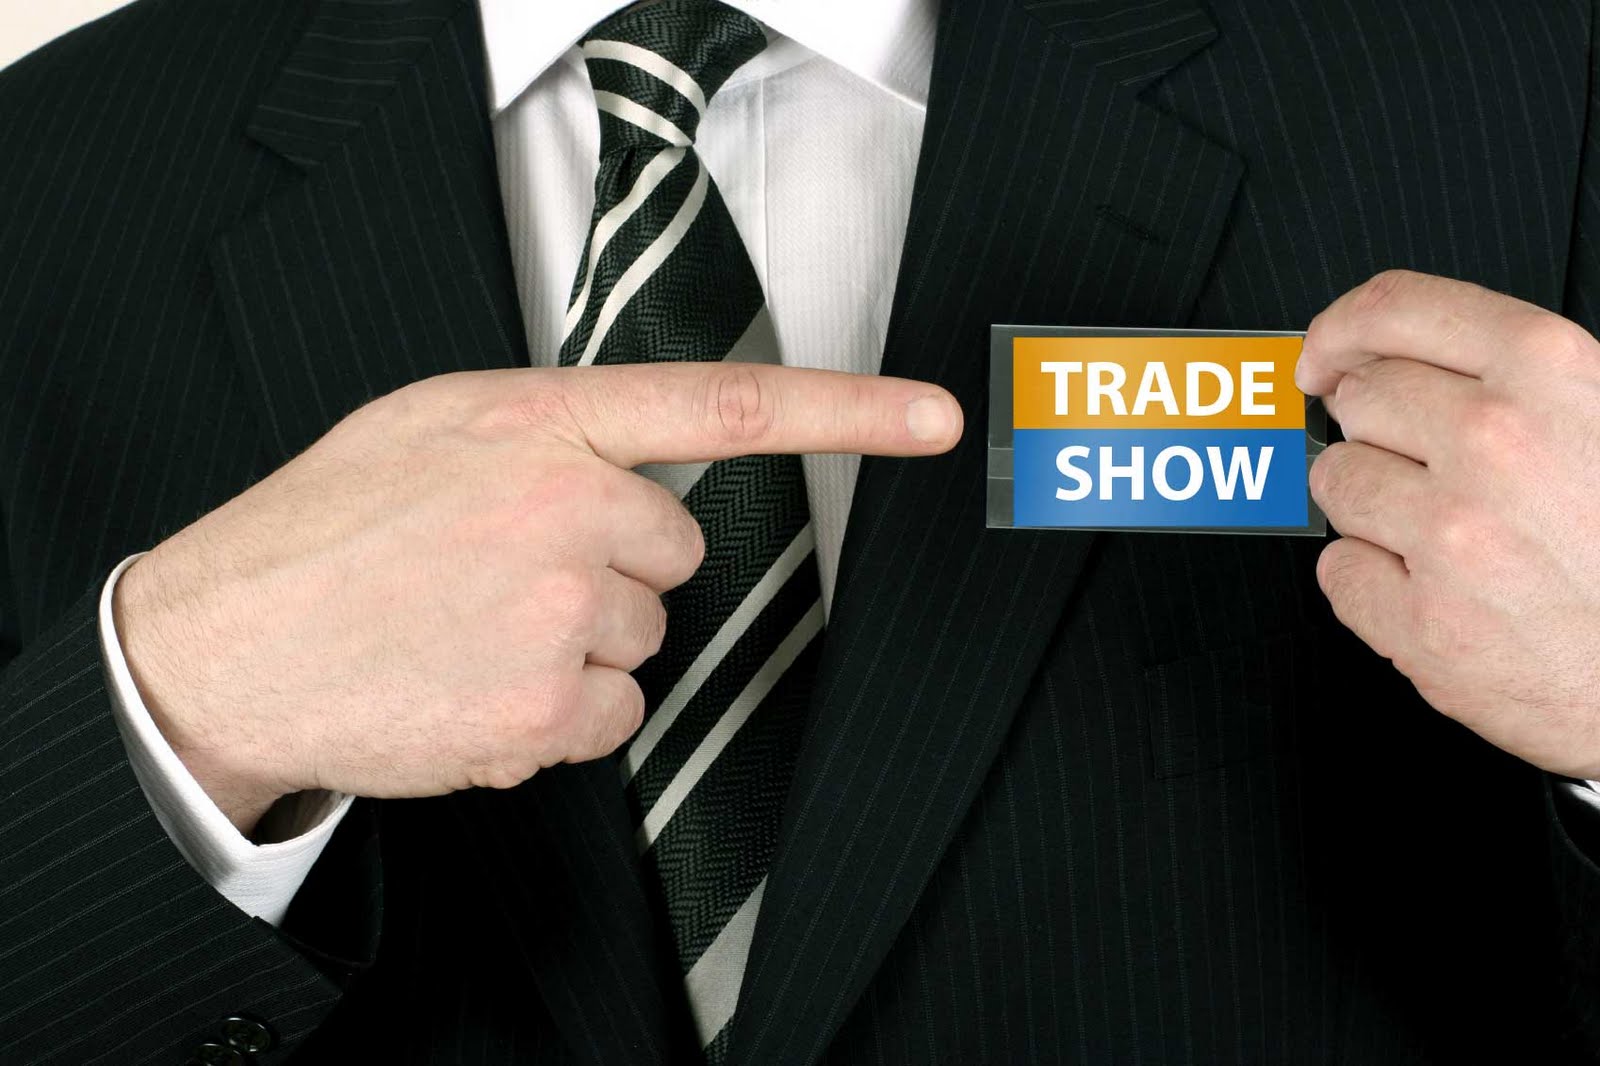 Trade show